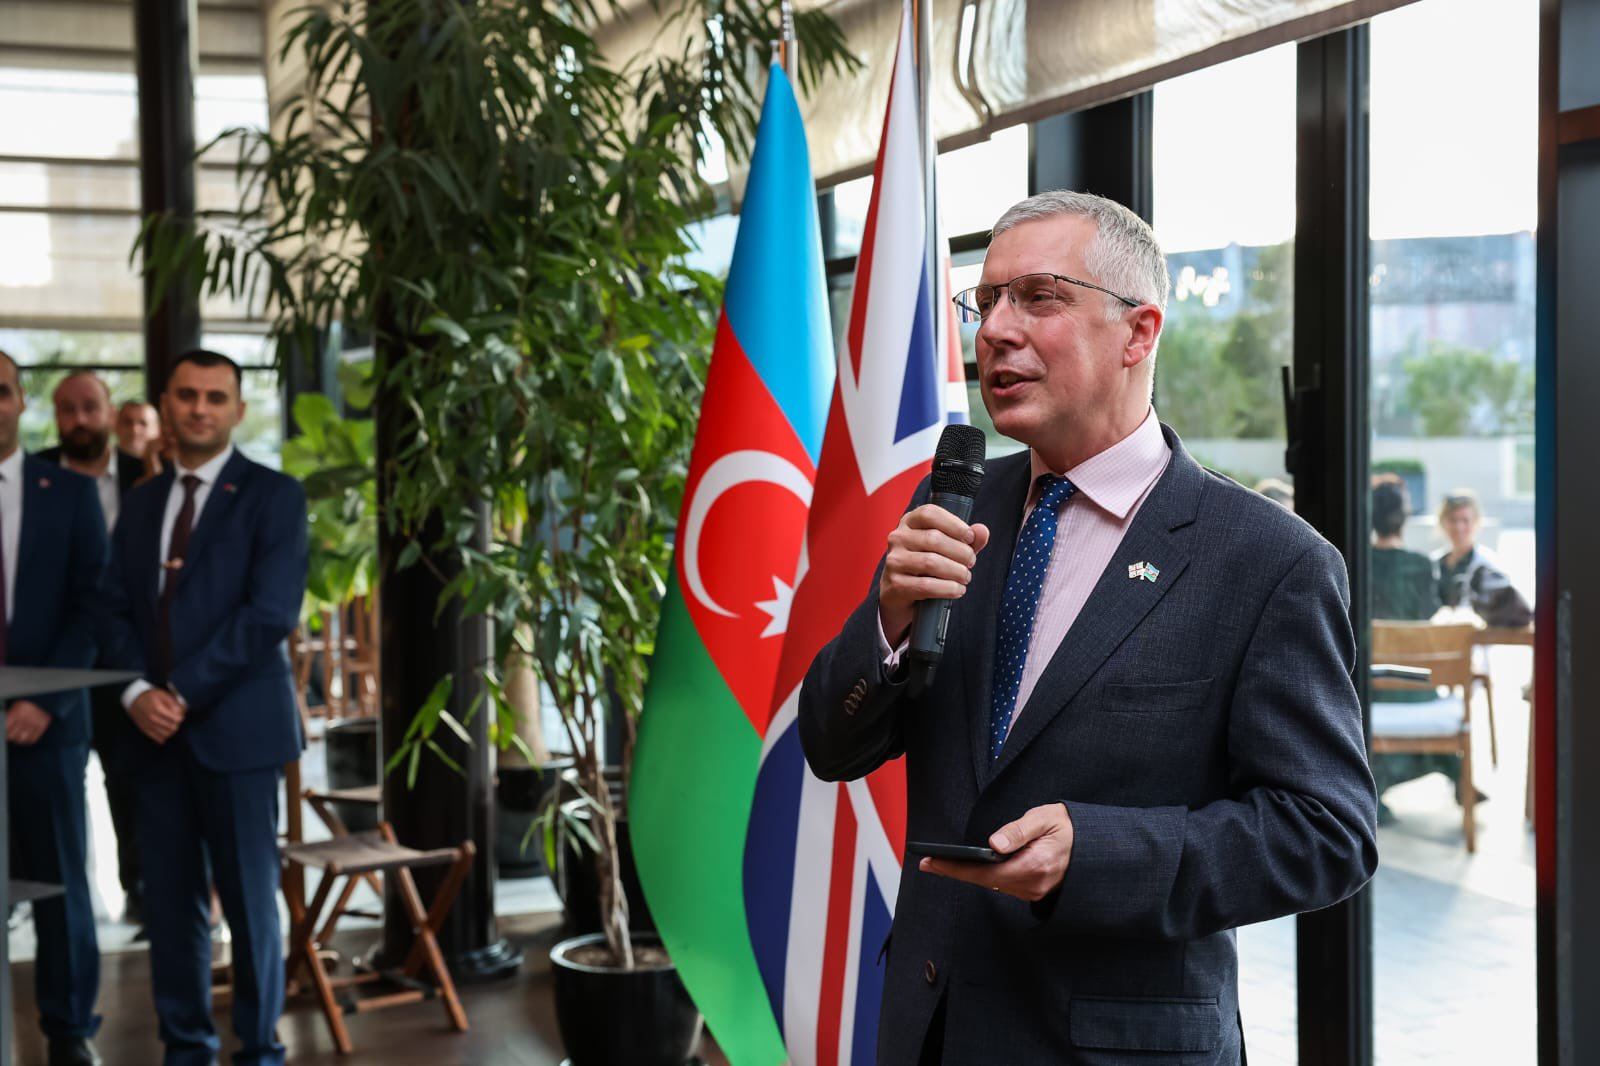 Великобритания и "Азеркосмос" уже много лет сотрудничают - посол